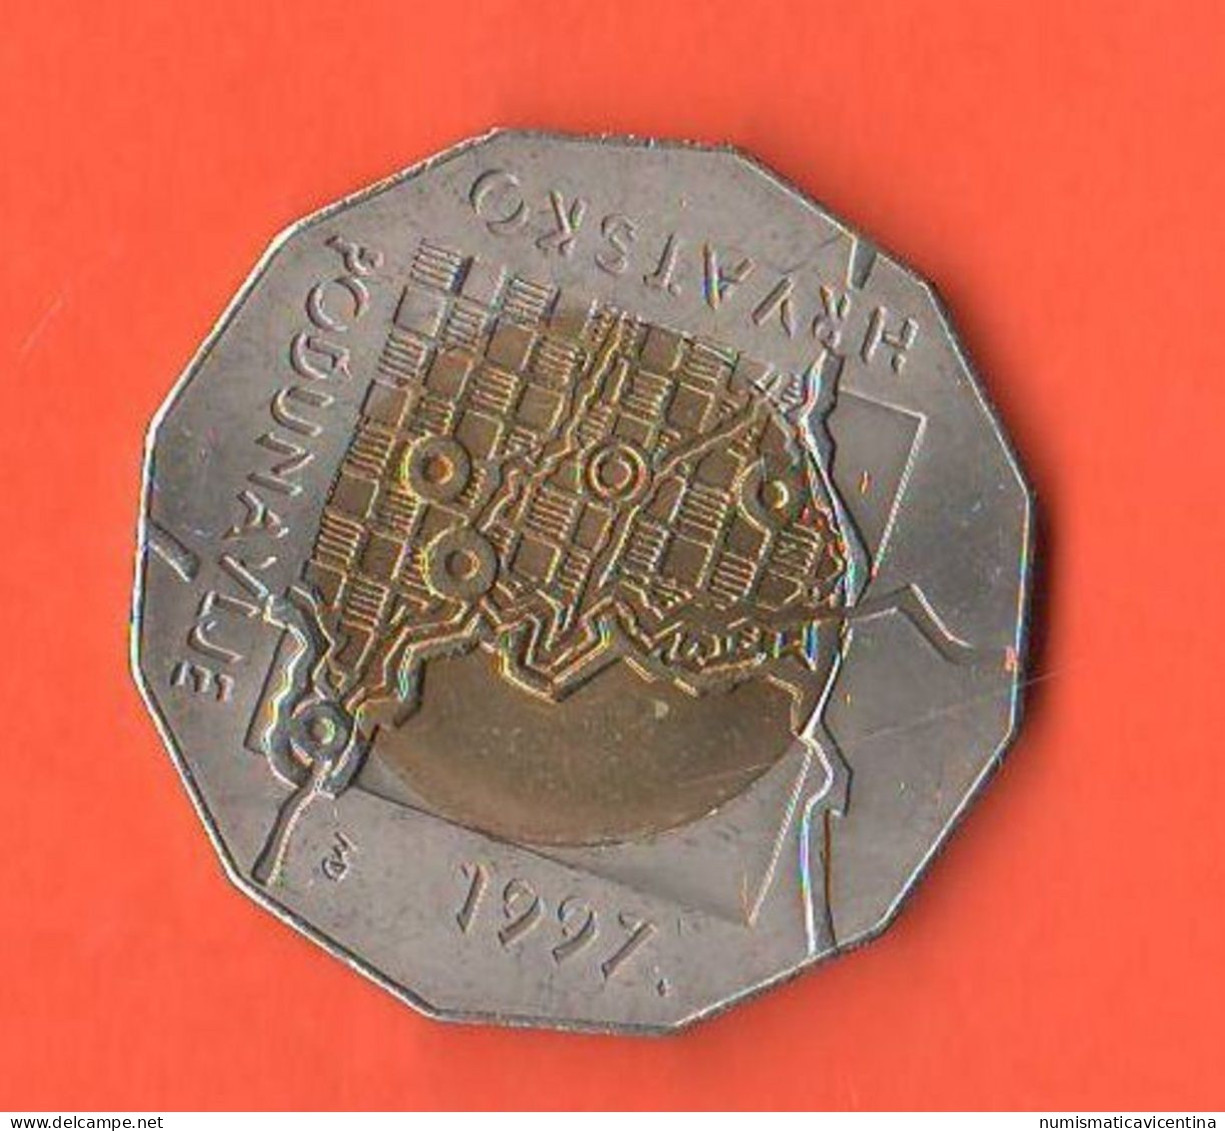 Croazia 25 Kuna 1997 Croatia ONU Republic Hrvatska Croatie Bimetallic Coin - Croatie